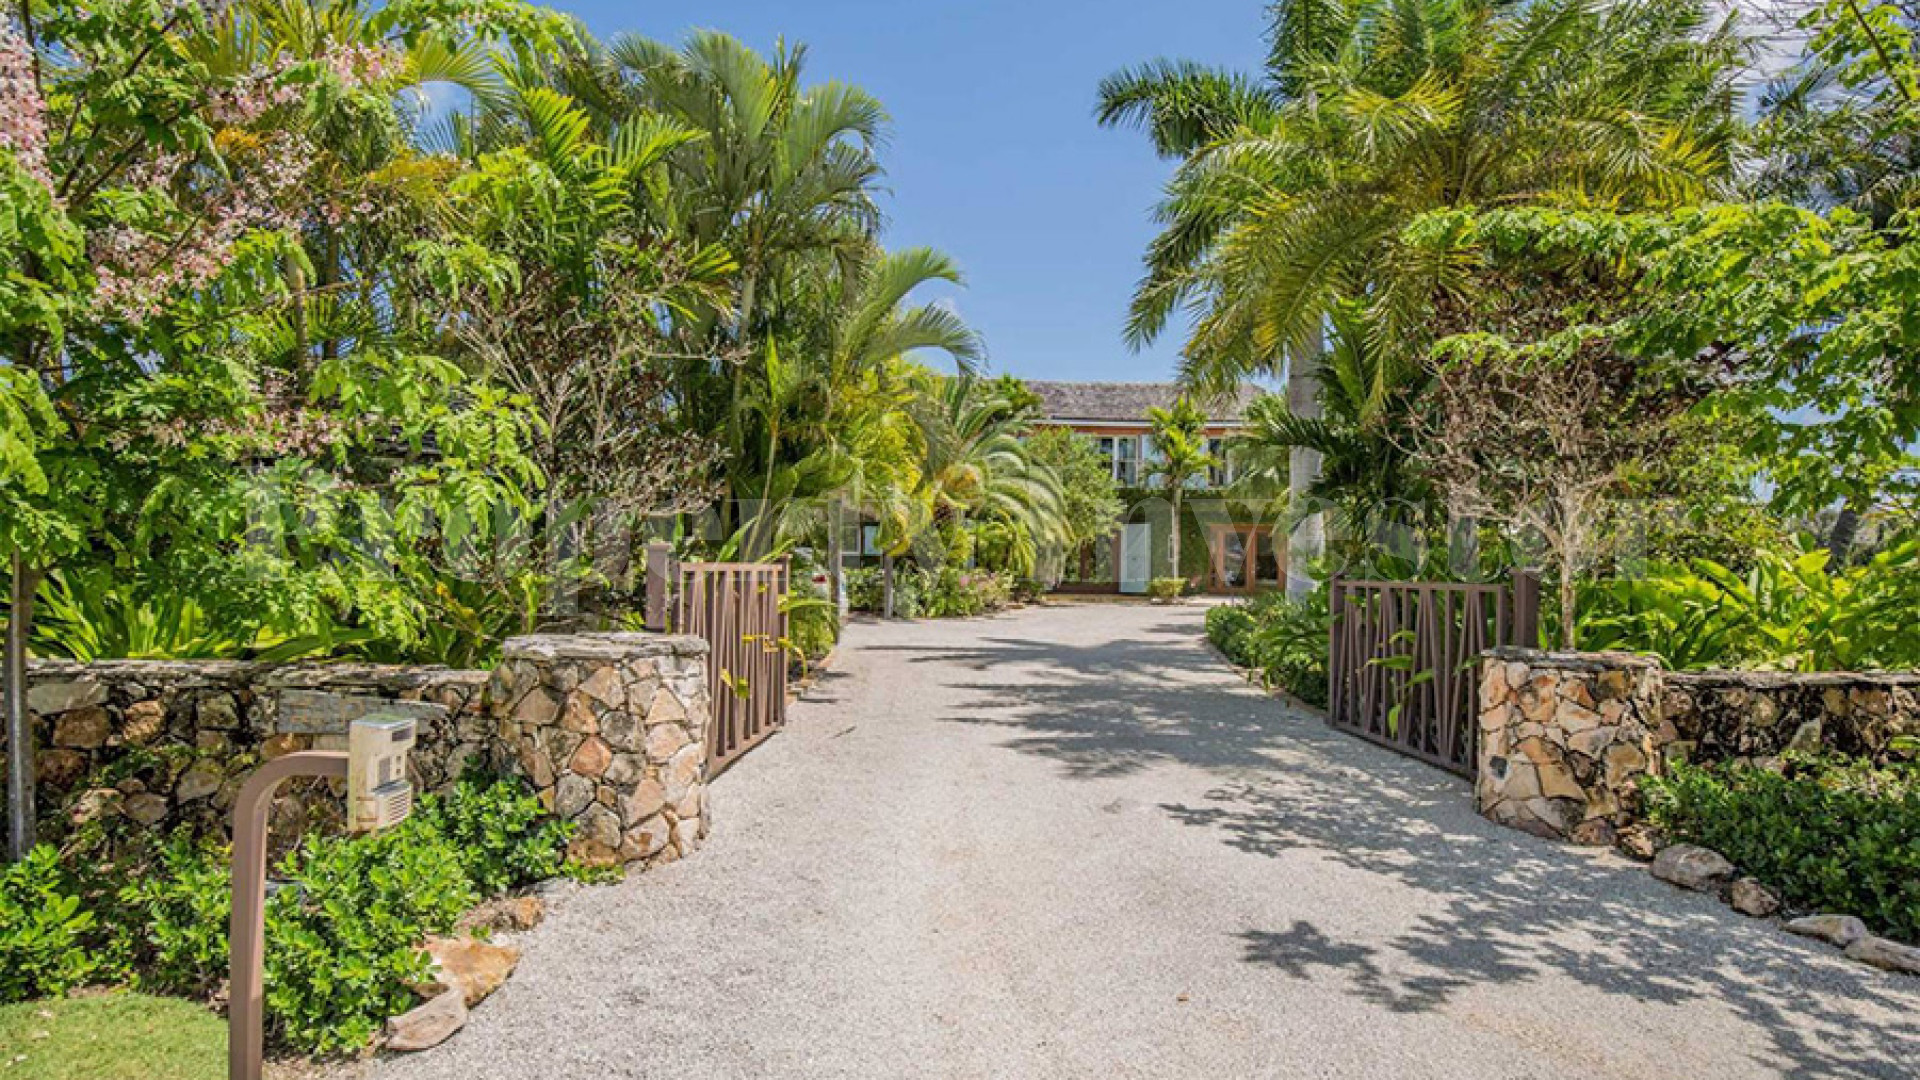 7 Bedroom Private Designer Island Residence in Nassau